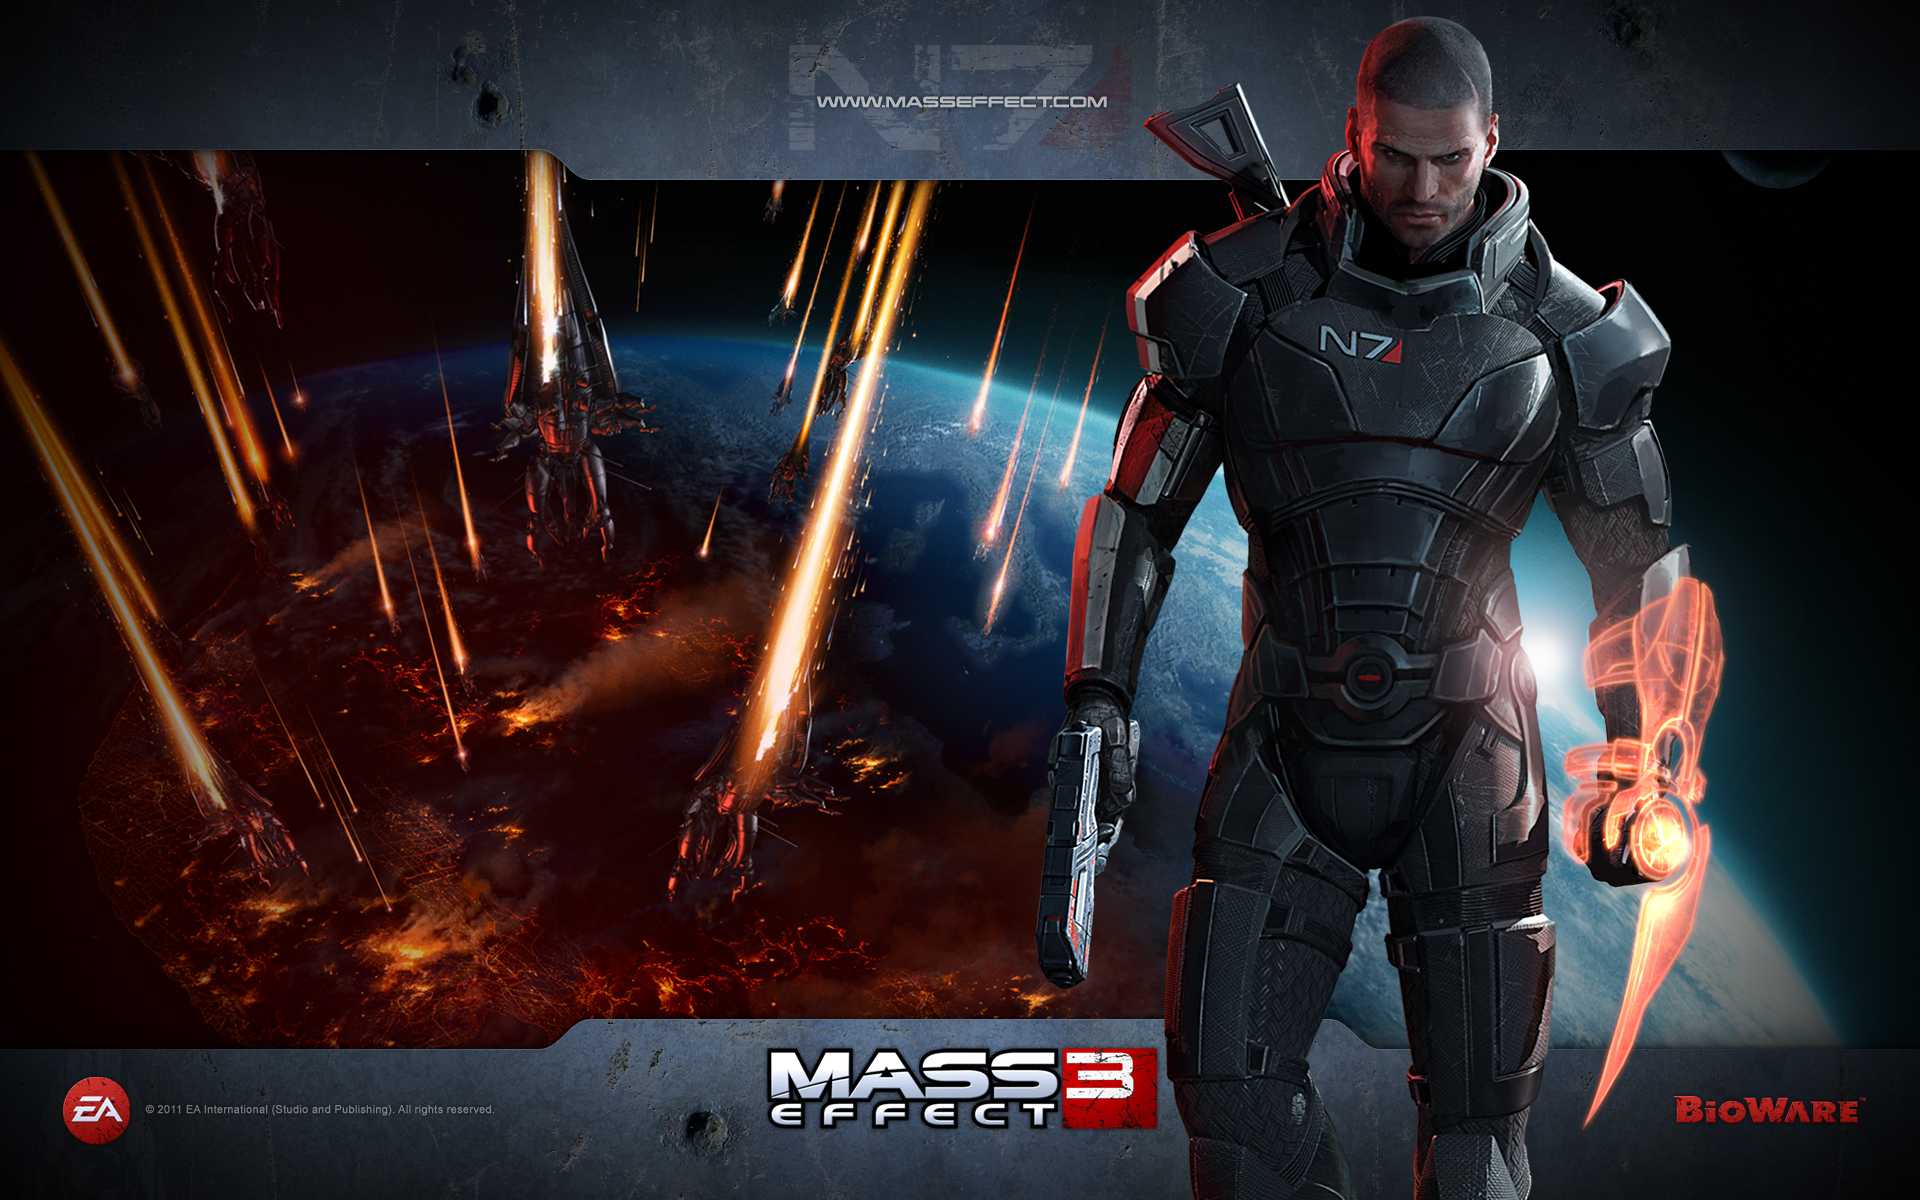 Mass Effect // flicker.com